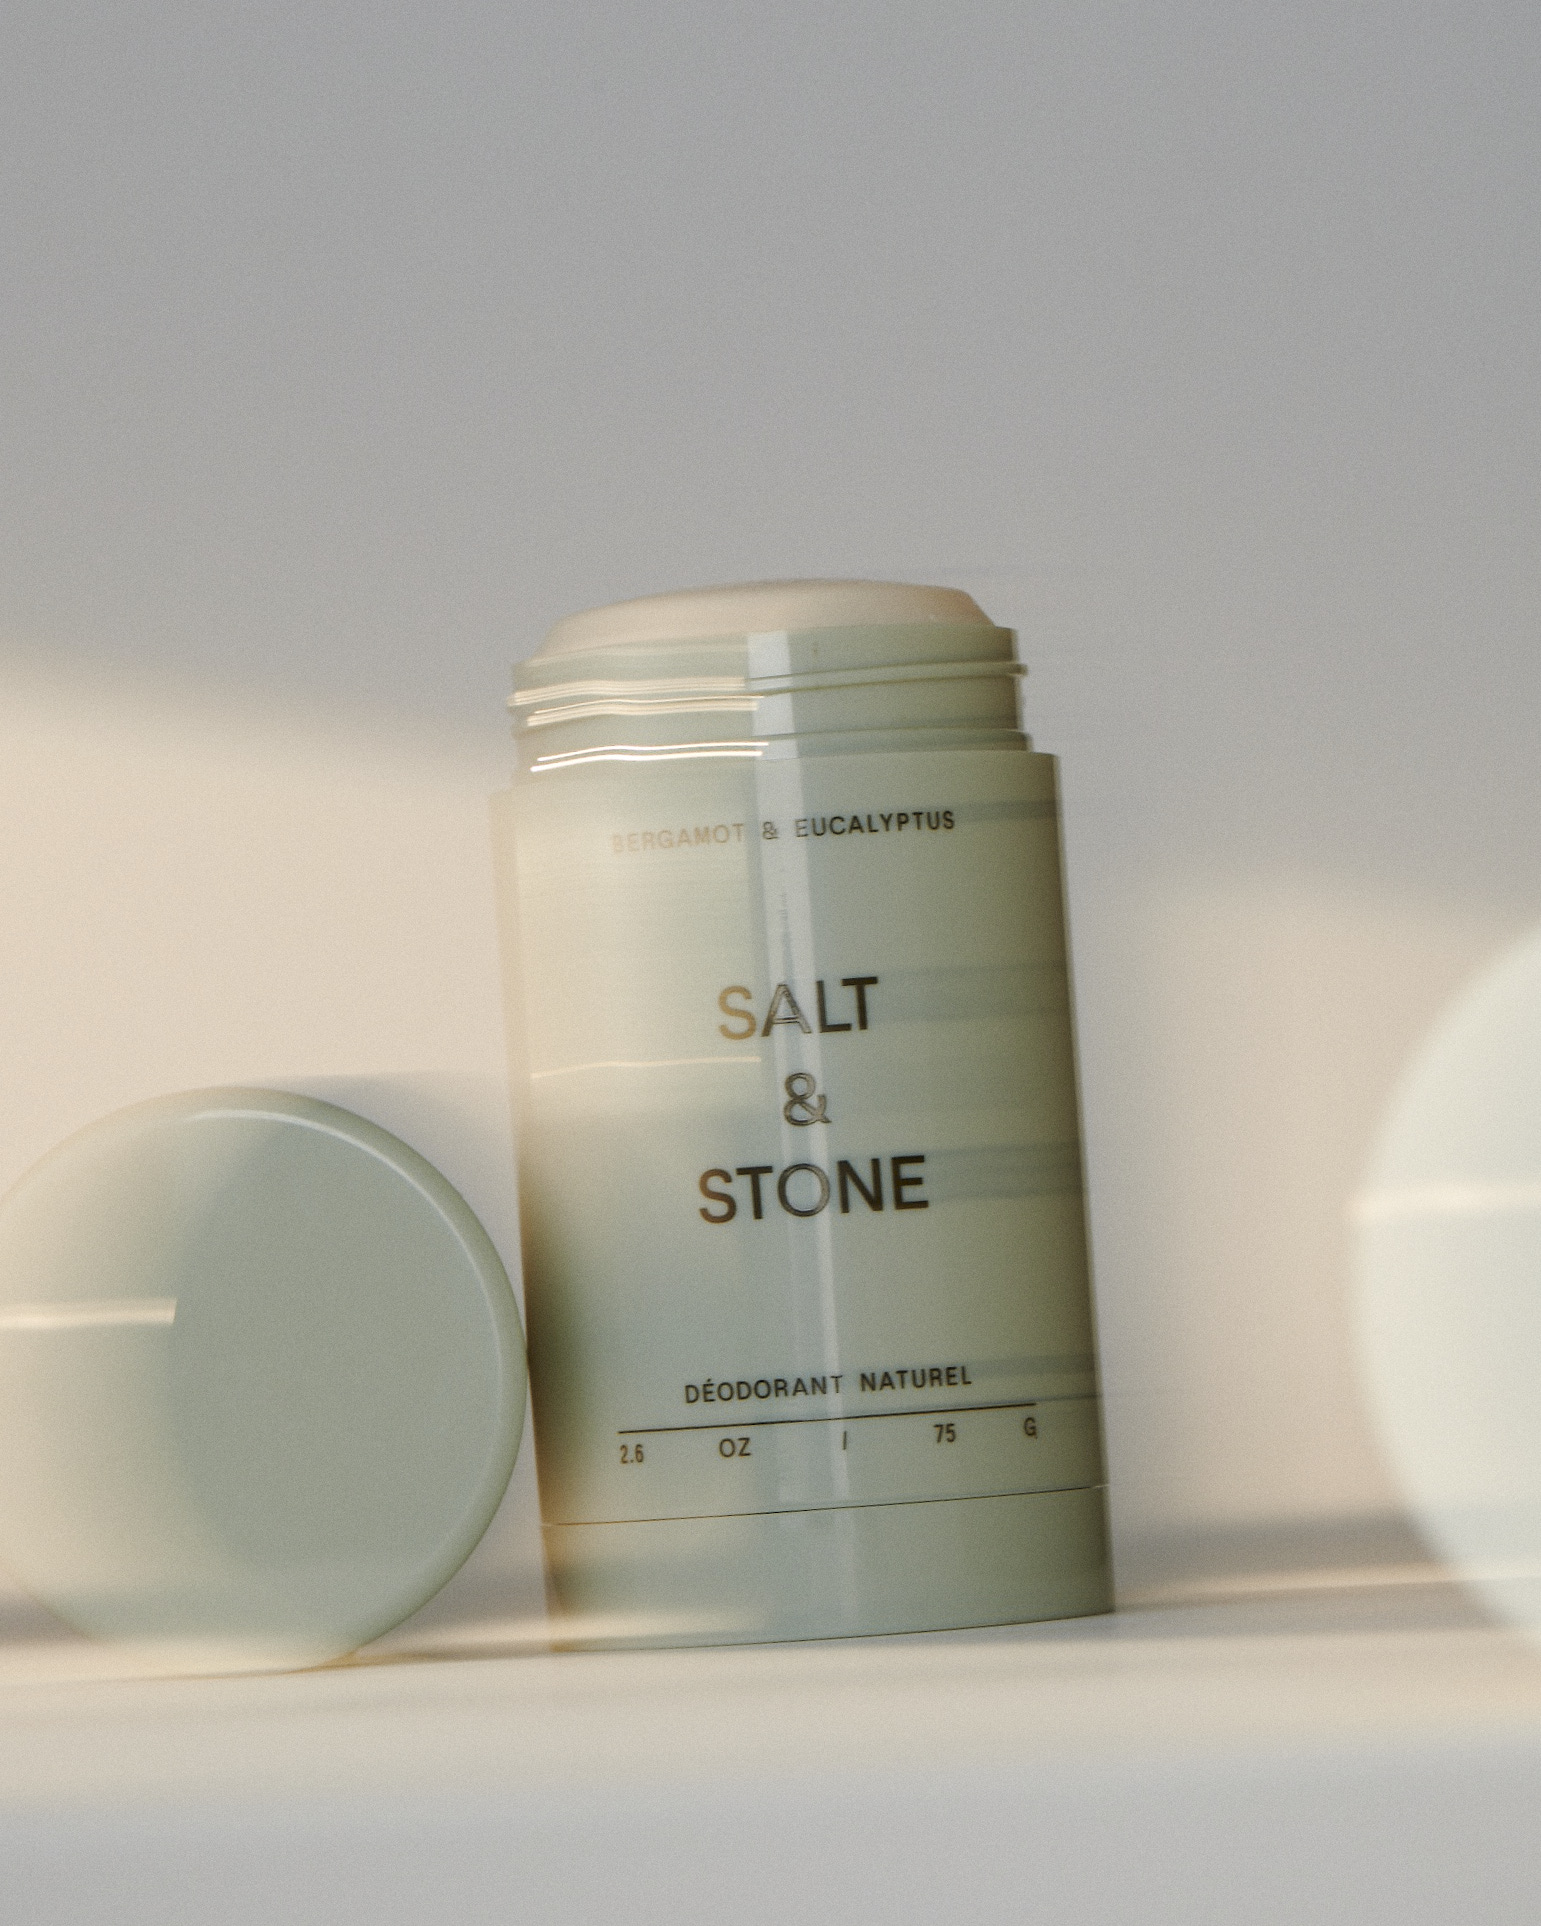 Salt & Stone naturaalne deodorant, Bergamot & Eucalyptus Hooldusvahendid ja kosmeetika - HellyK - Kvaliteetsed lasteriided, villariided, barefoot jalatsid